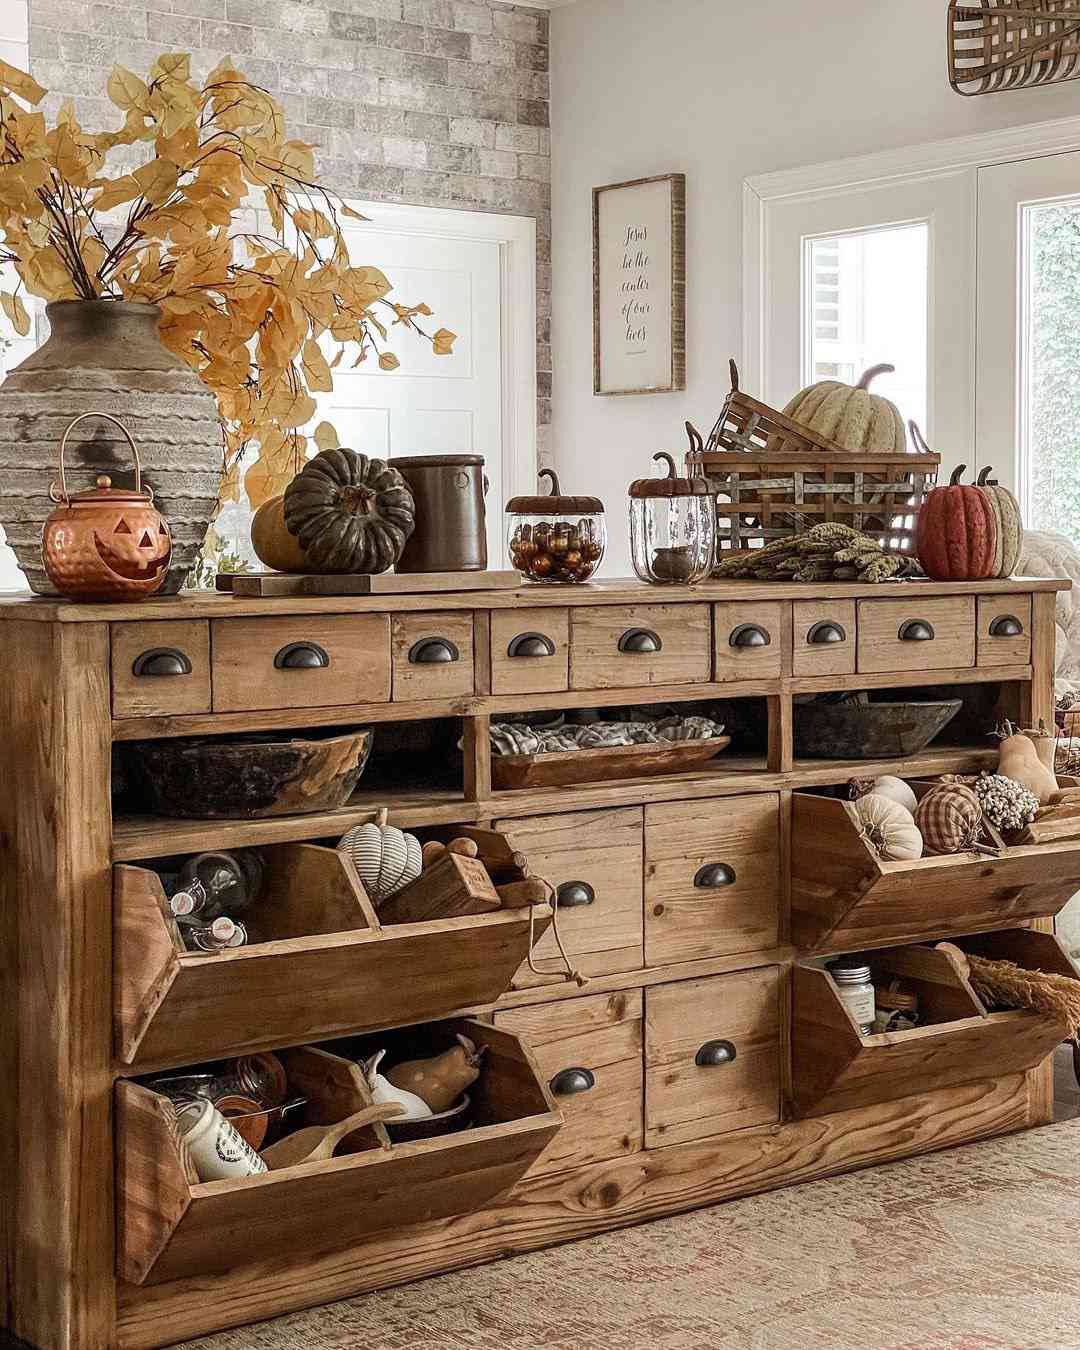 Une armoire à provisions pleine de décorations d'automne DIY